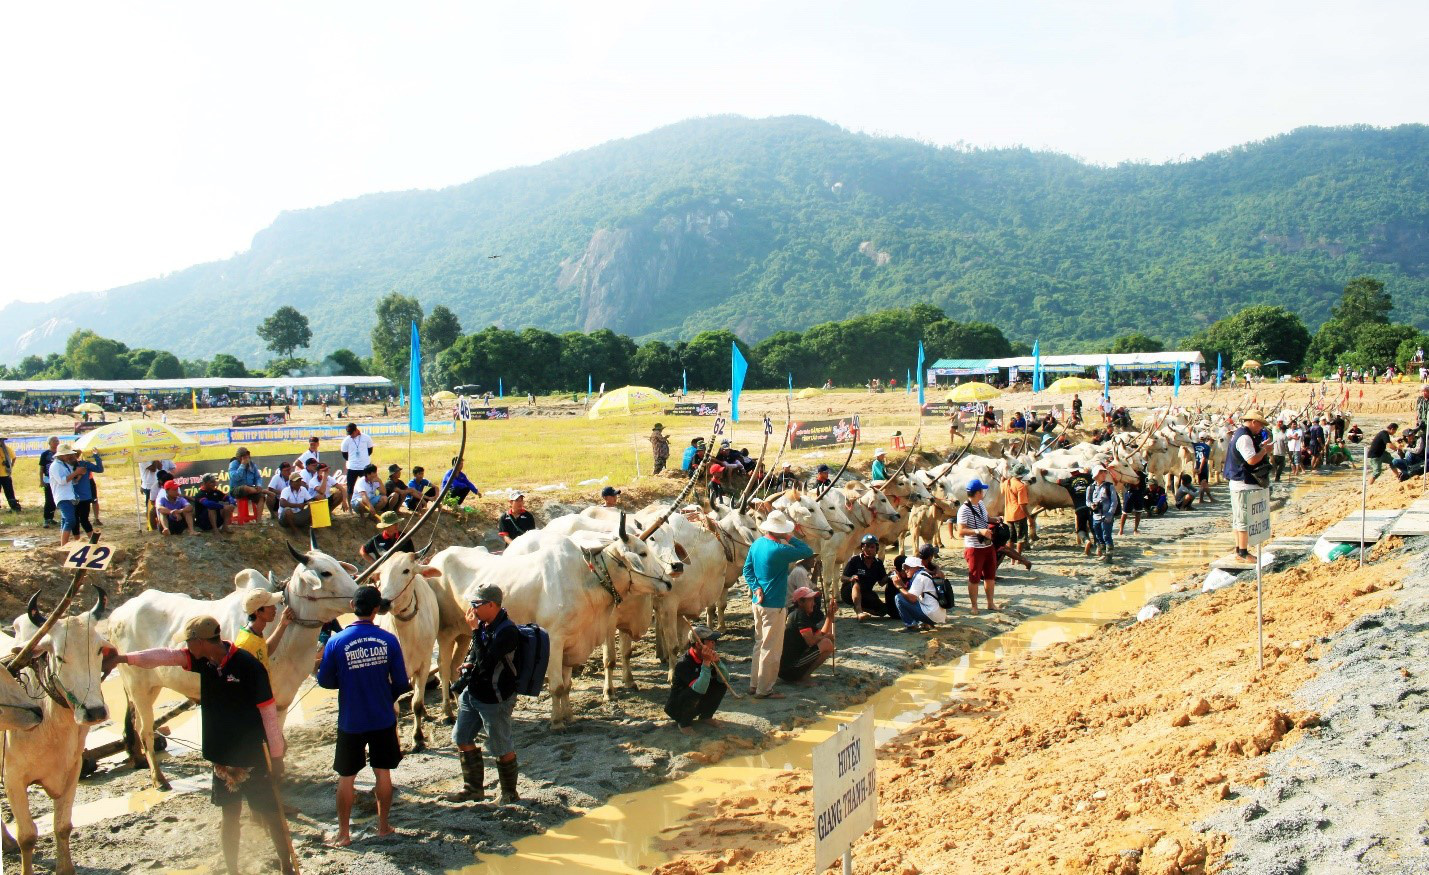 Nâng Hội đua bò Bảy Núi lên tầm quốc tế - Ảnh 1.